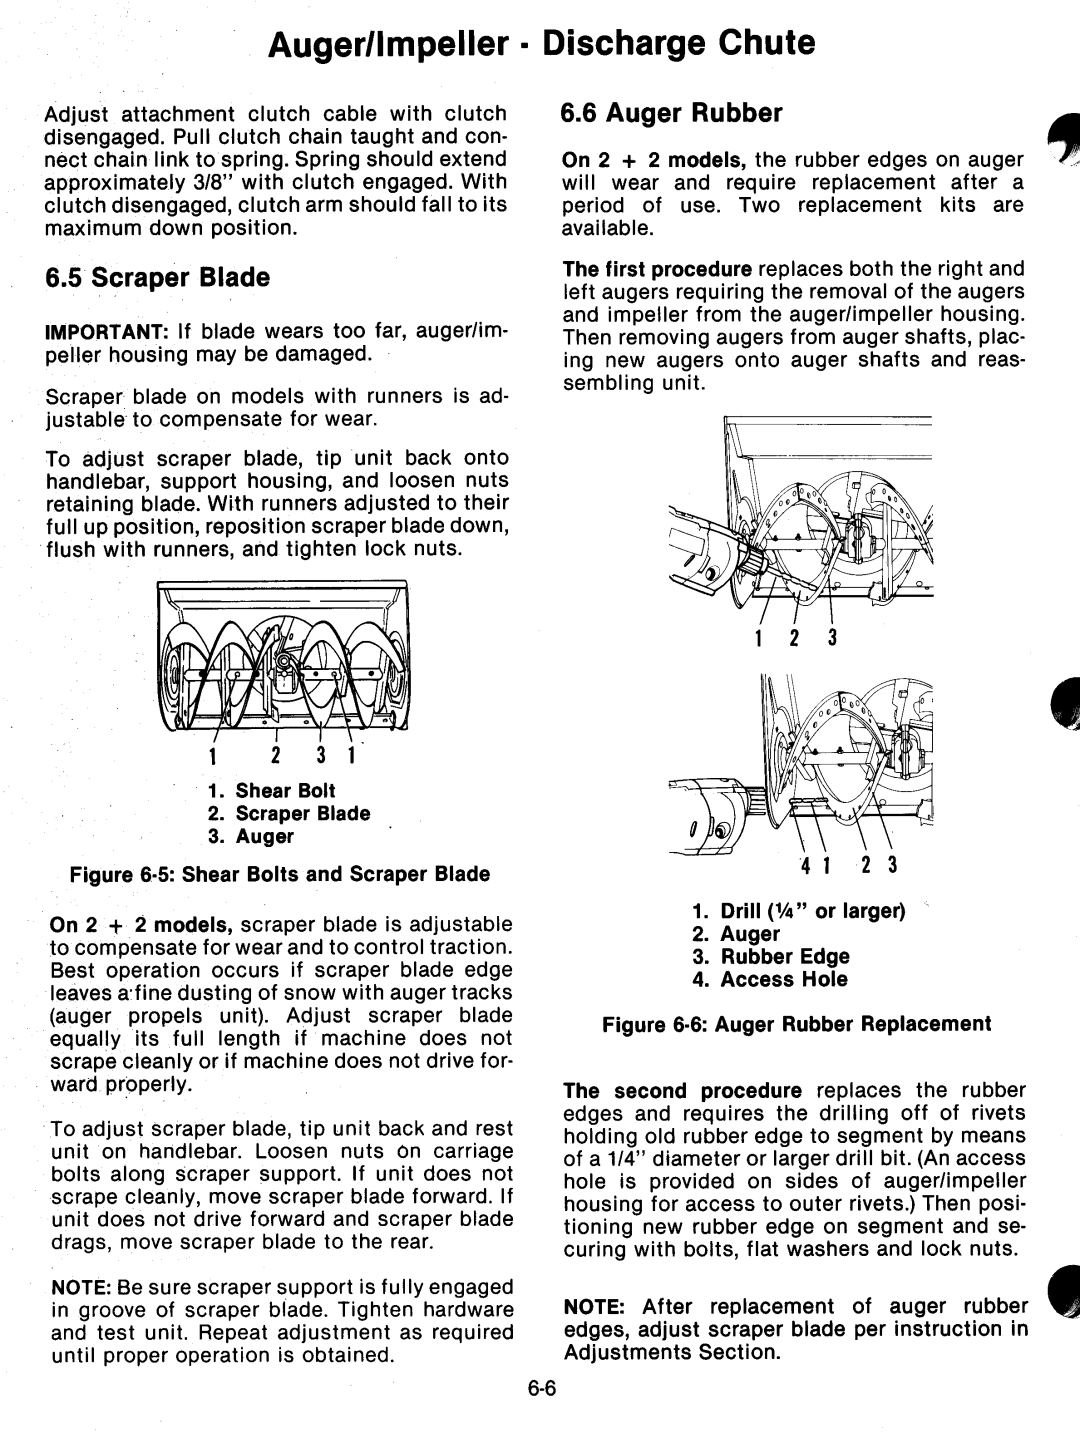 Ariens 932 Series manual 